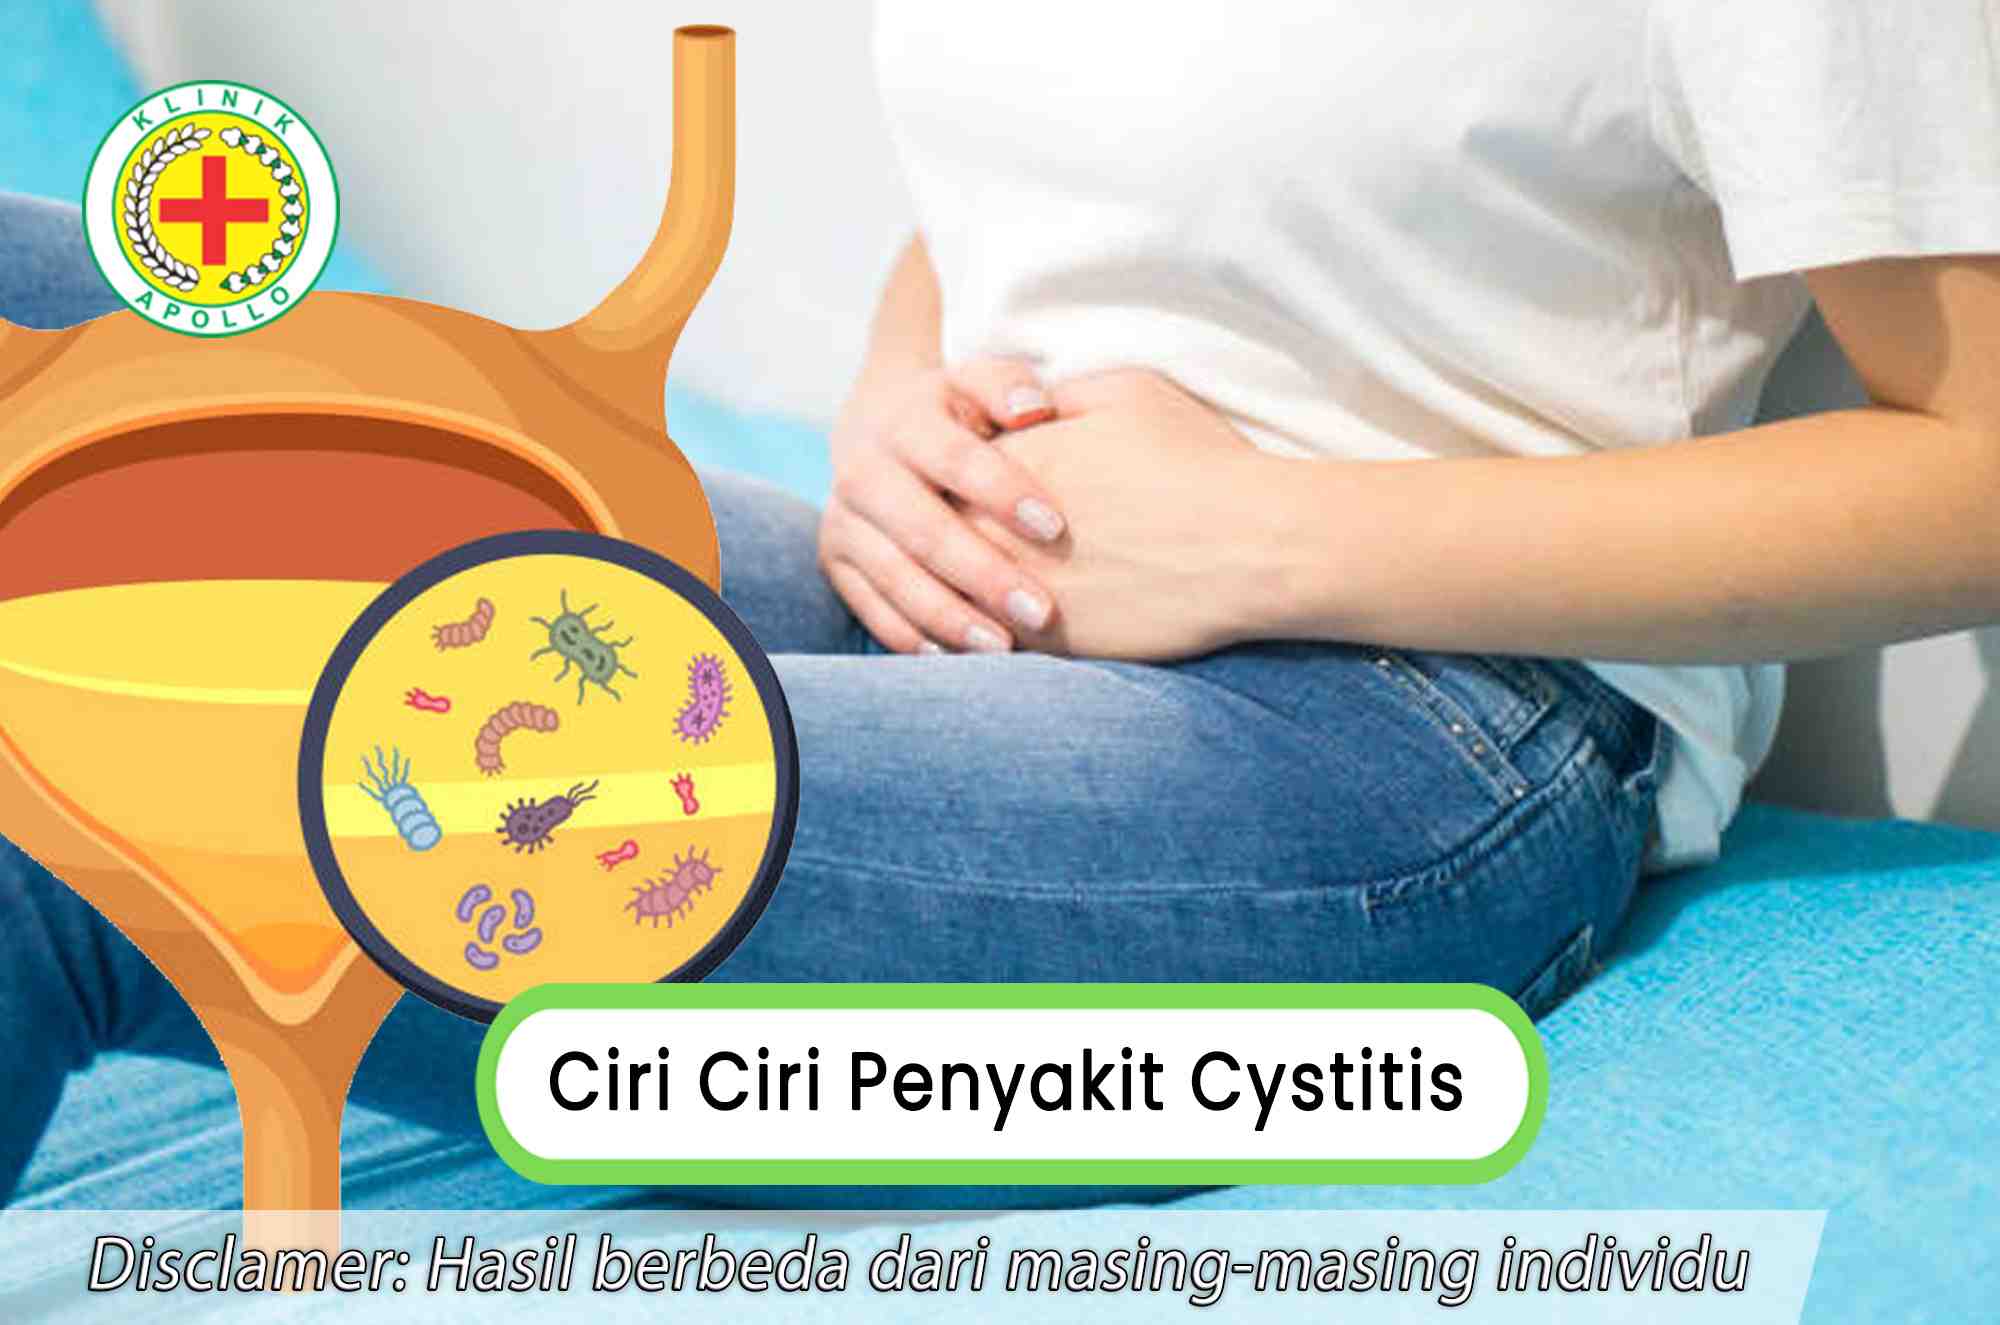 Mengetahui ciri ciri penyakit cystitis dapat mempermudah pengobatan selanjutnya.